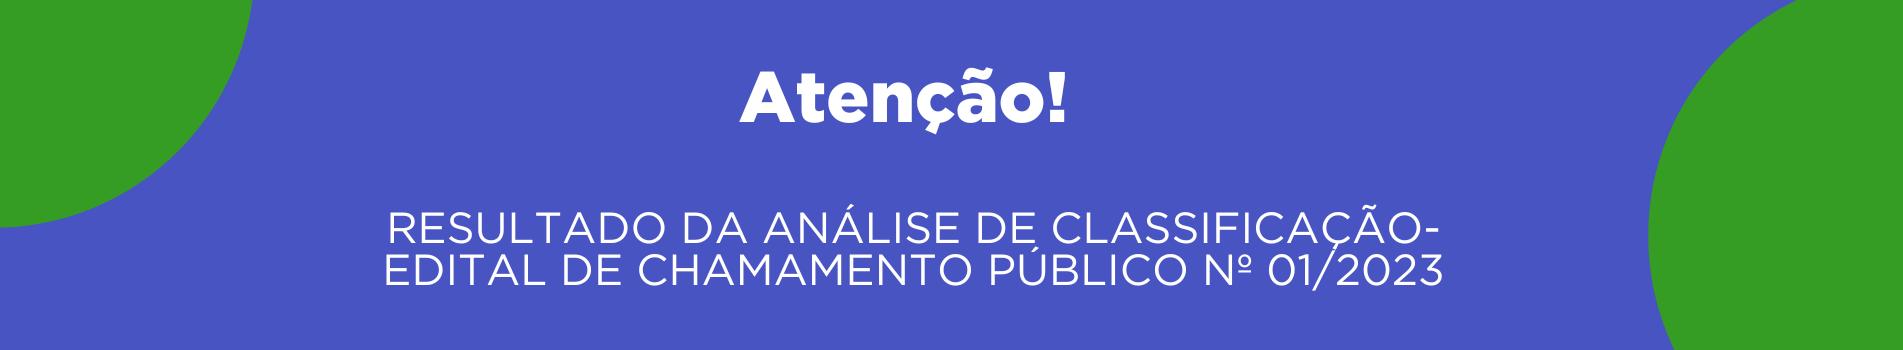 RESULTADO DA ANÁLISE DE CLASSIFICAÇÃO- EDITAL DE CHAMAMENTO PÚBLICO Nº 01/2023